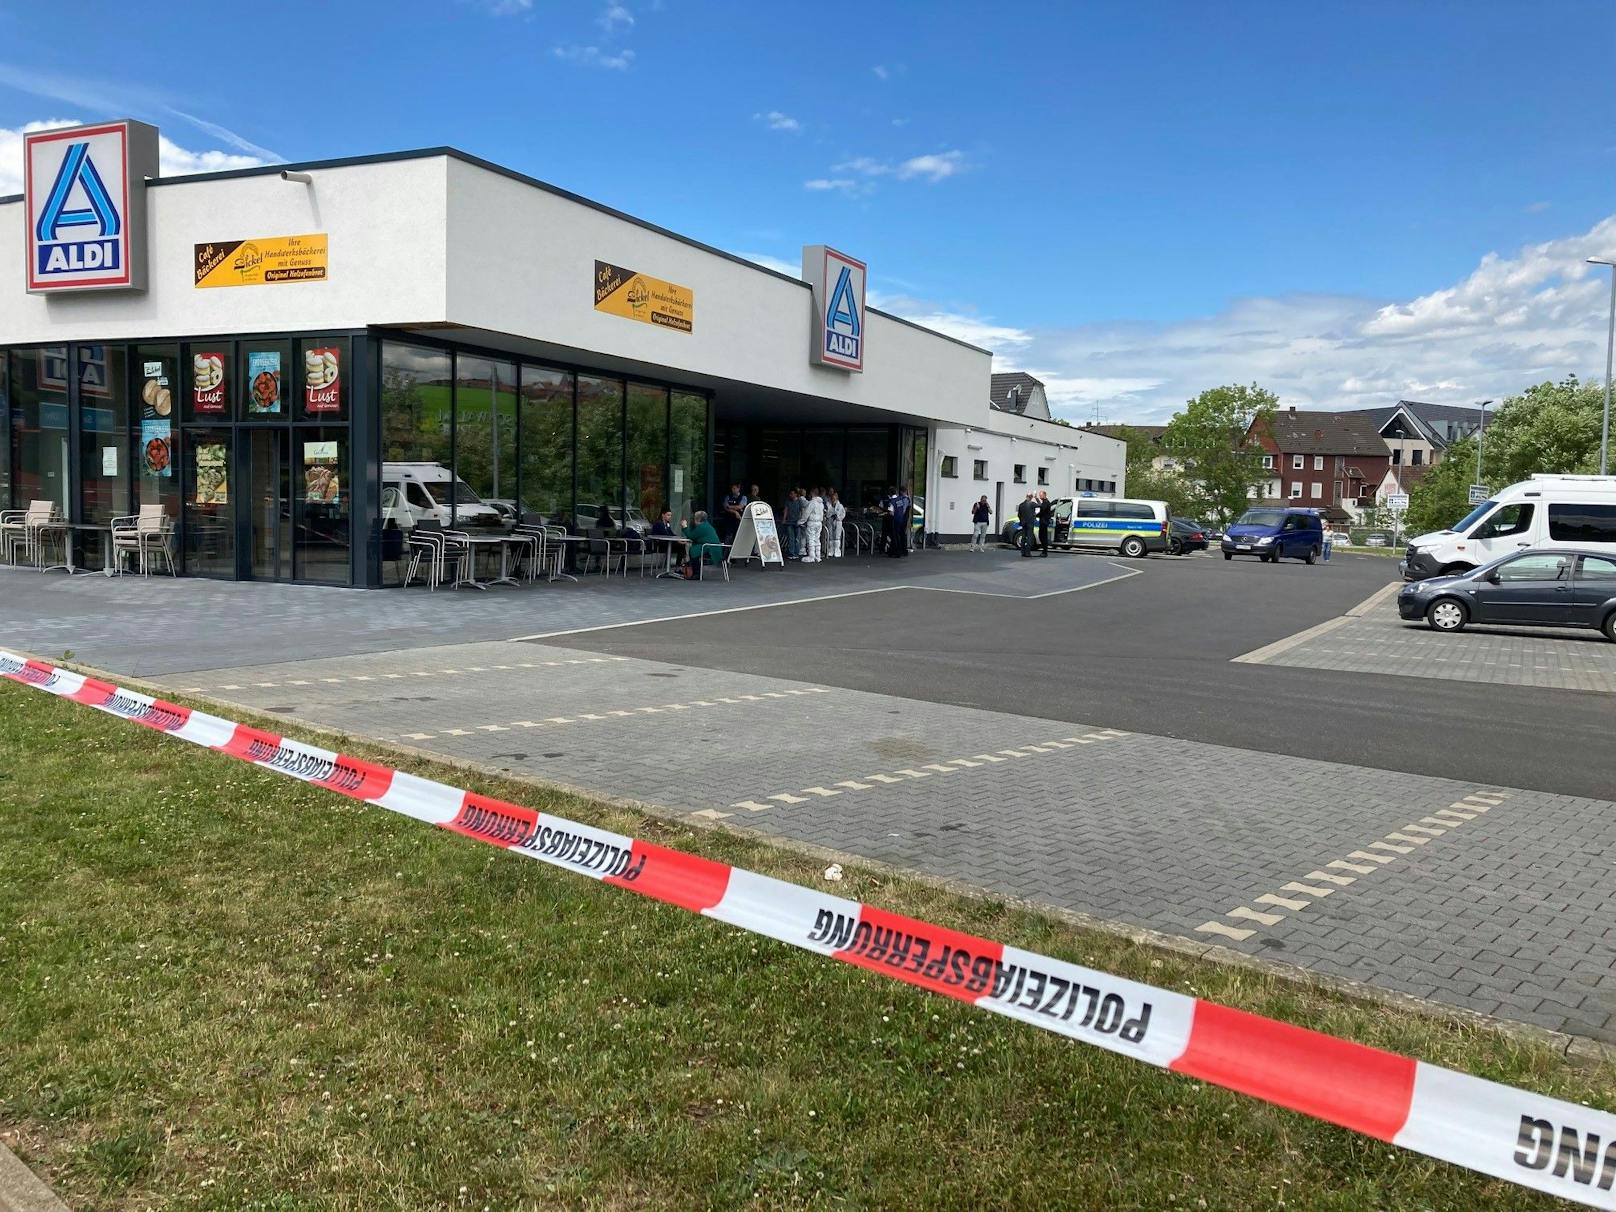 Tödliche Schüsse fielen am Dienstag in einem Supermarkt in Deutschland, in Schwalmstadt.